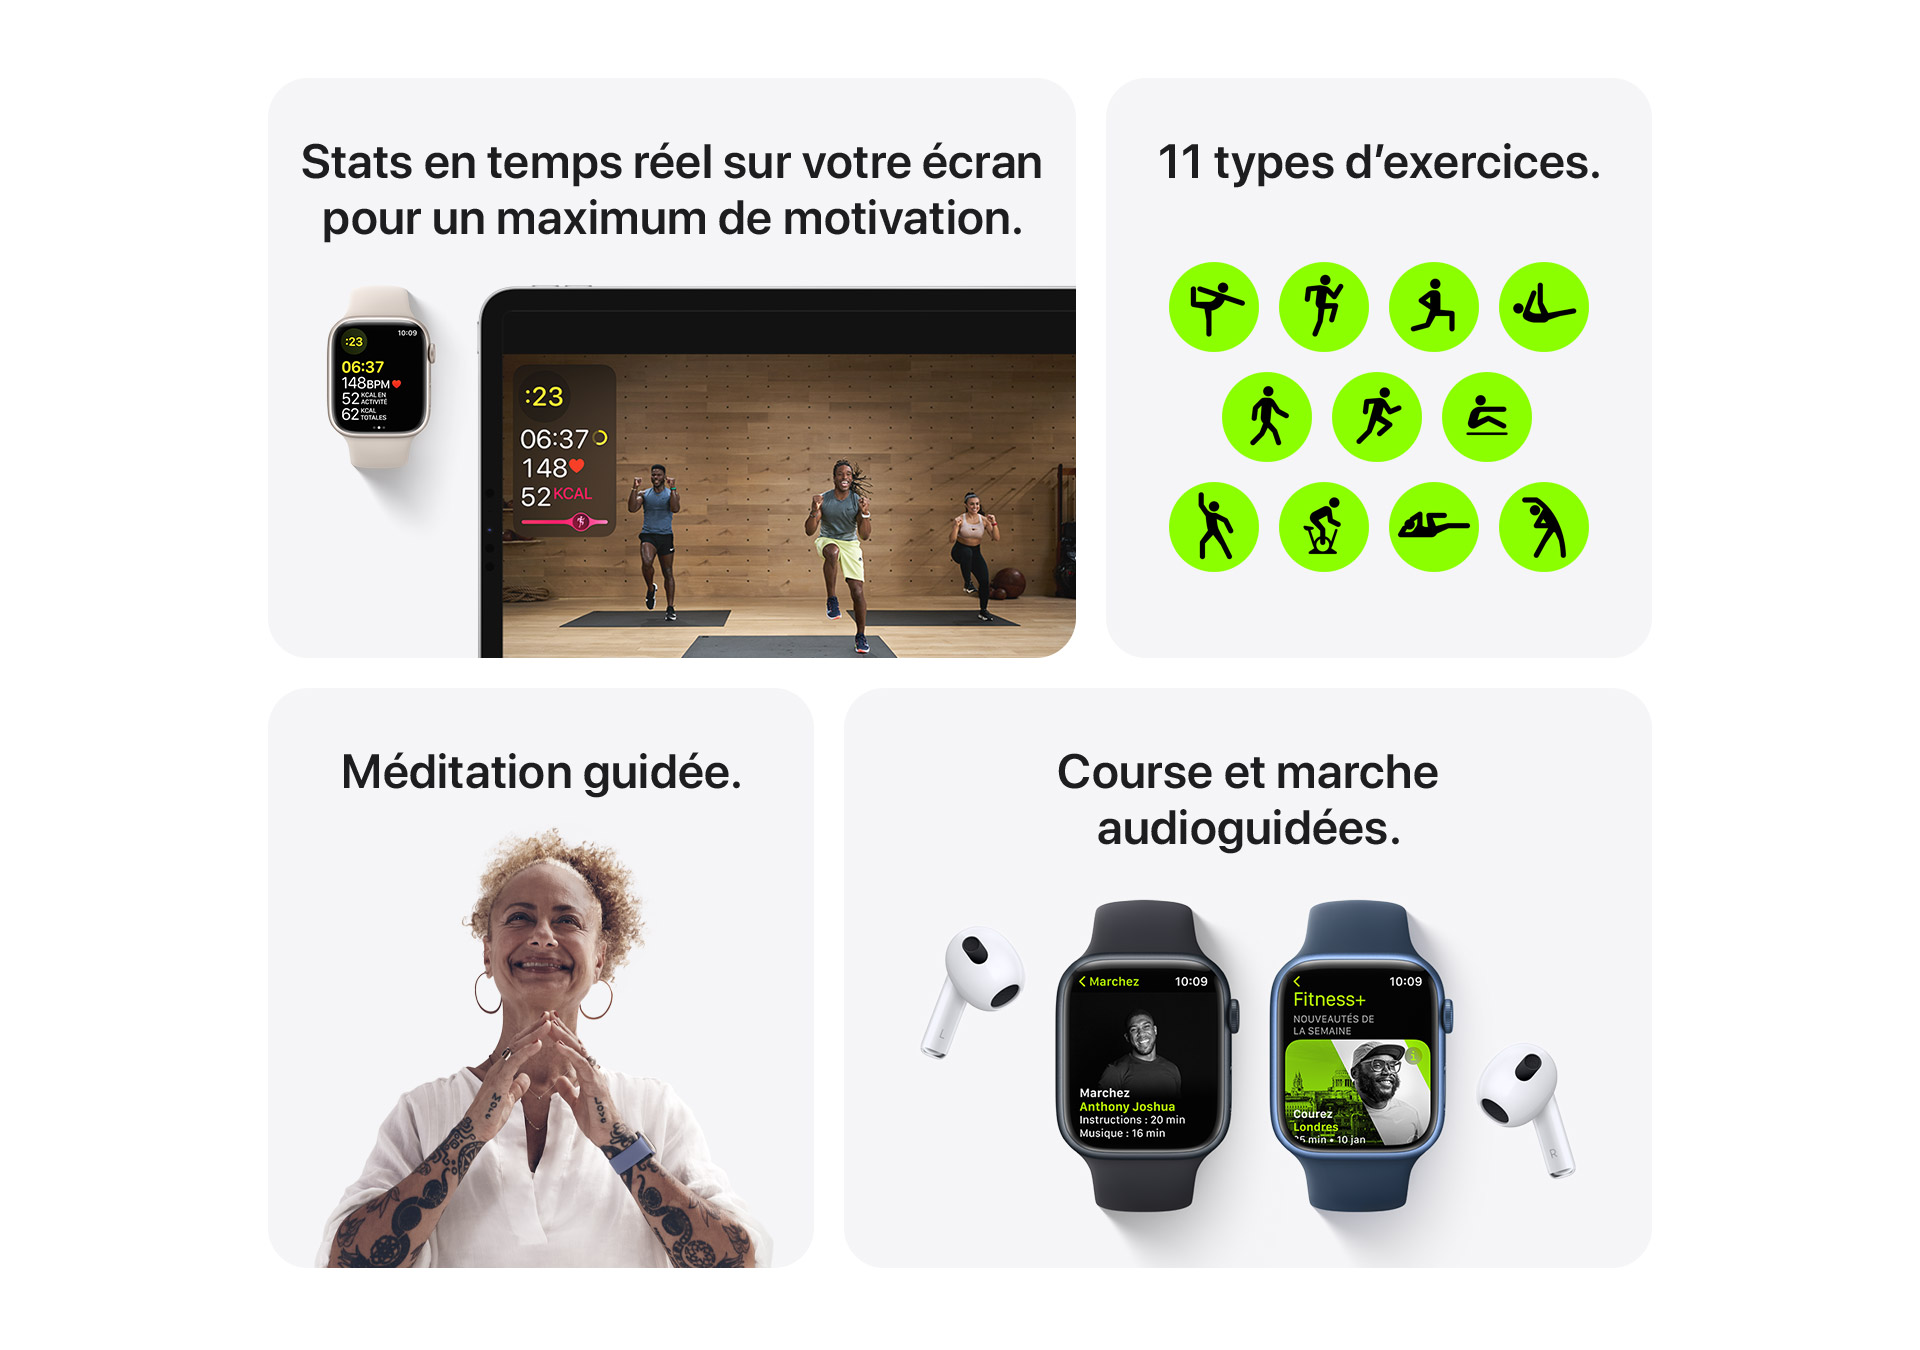 Stats en temps réel sur votre écran pour un maximum de motivation. 11 types d'exercices. Méditation guidée. Course et marche audio-guidées.